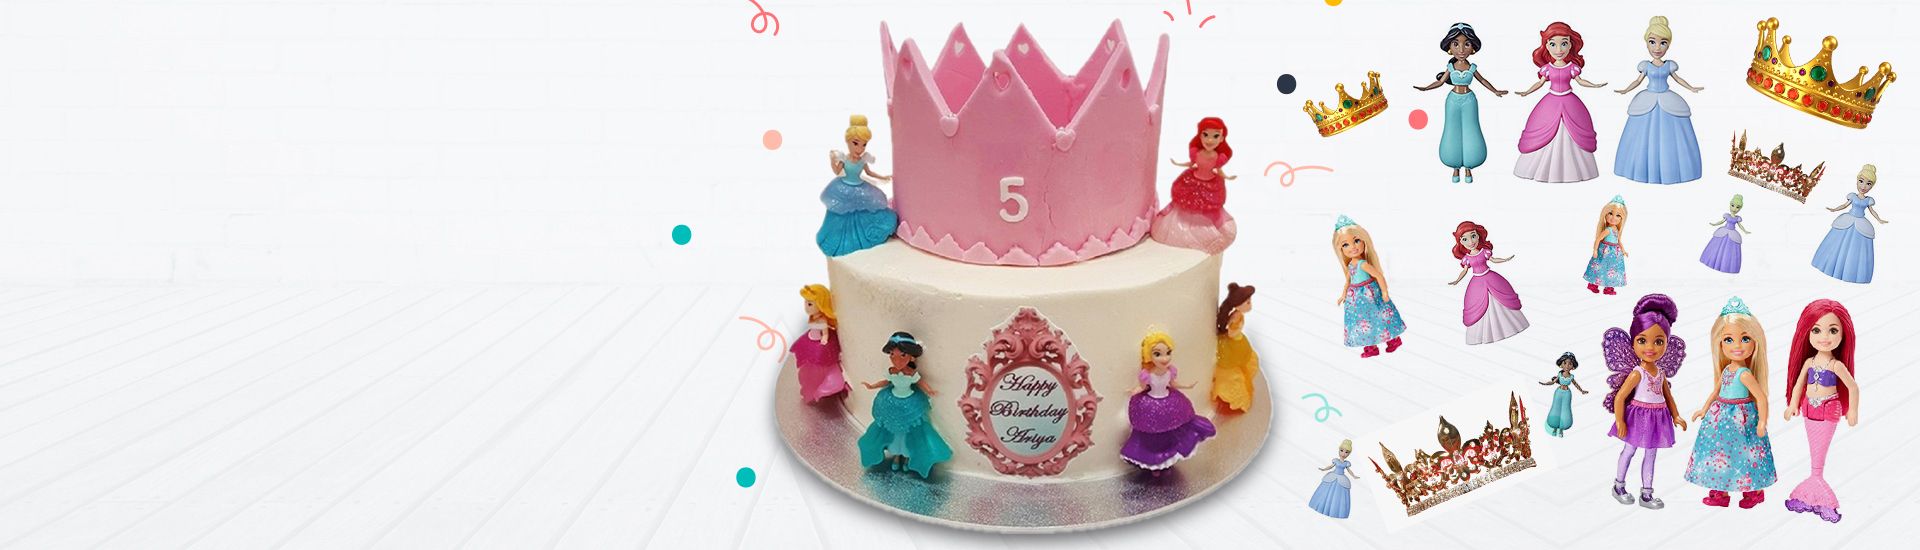 princess-tiara-birthday-cake-nk15